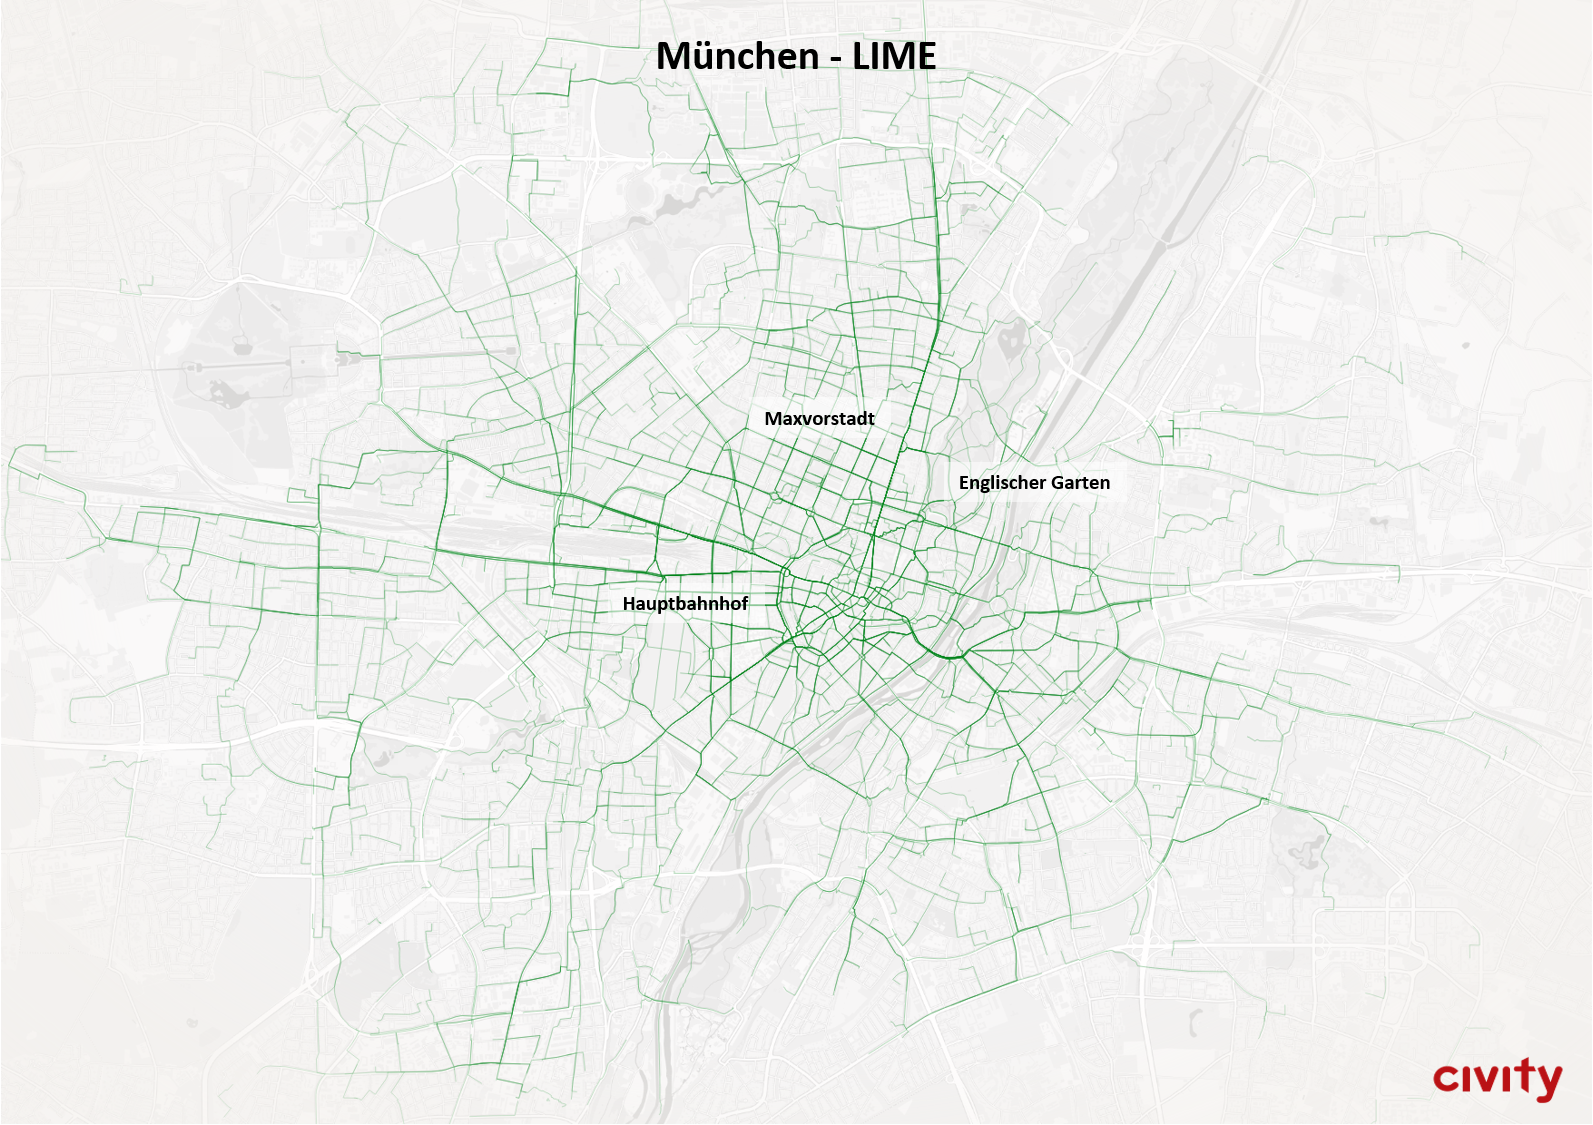 Munich_lime